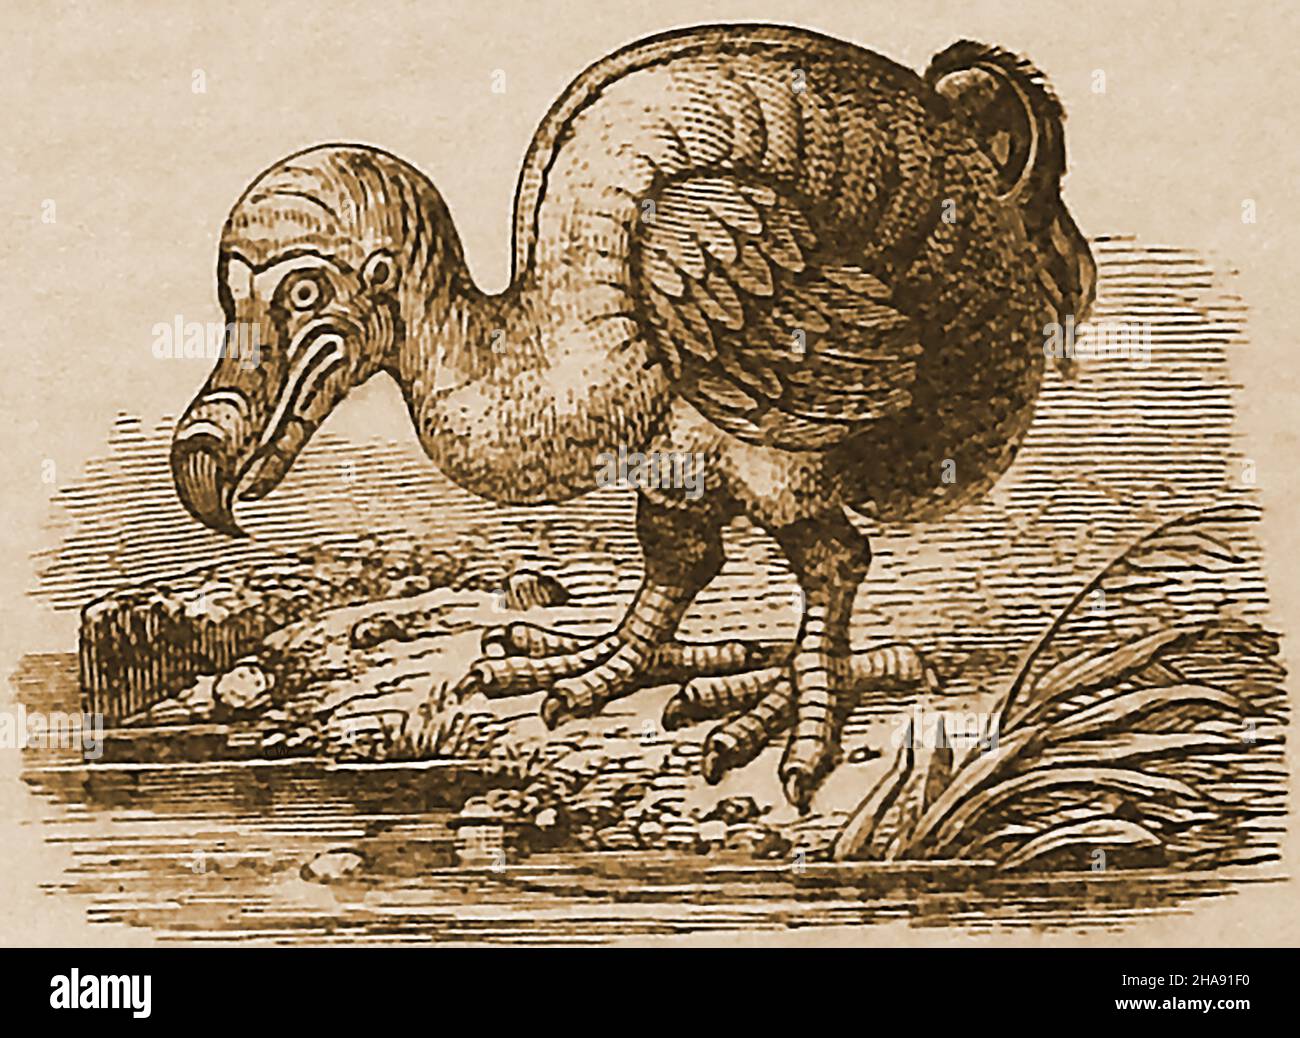 Un'incisione del 19th secolo di un uccello Dodo estinto e senza luce. Il dodo (Raphus cullatus) era un uccello che viveva esclusivamente sull'isola di Mauritius, (Oceano Indiano). Il suo parente genetico più vicino era il Rodrigues solitaire (ora anche estinto) che viveva sulla vicina isola di Rodrigues. La prima menzione registrata del dodo fu da parte dei marinai olandesi nel 1598. L'uccello una volta abbondante e il suo uovo singolo erano evidentemente buon mangiare che portava ad esso essere cacciato da gruppi successivi di marinai visitanti che portavano alla sua estinzione un po 'di tempo subito dopo il 1662, quando fu avvistato l'ultima volta. Foto Stock